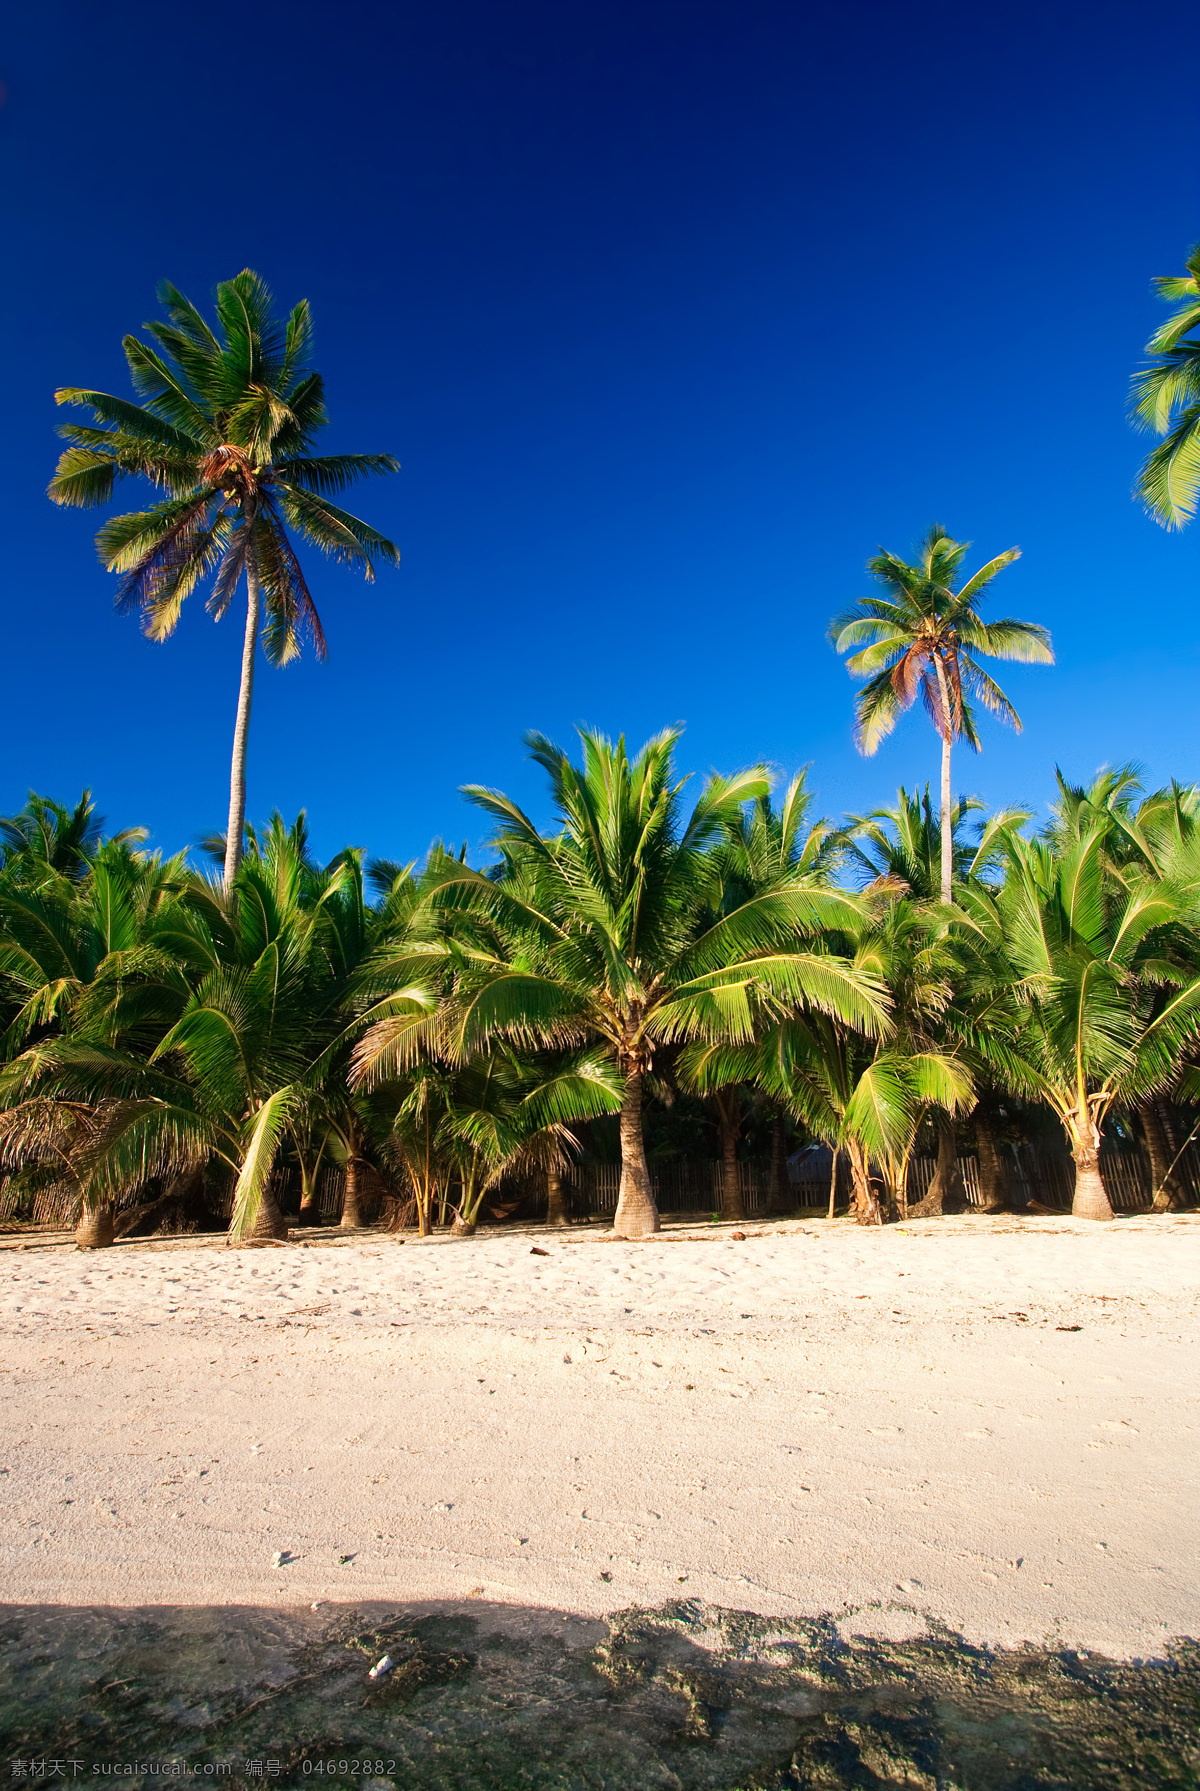 菲律宾 锡 亚 高岛 度假旅游 度假 旅游 冲浪圣地 海水 蓝色 清澈 蓝天白云 椰树 棕榈树 沙滩 海边 自然风景 旅游摄影